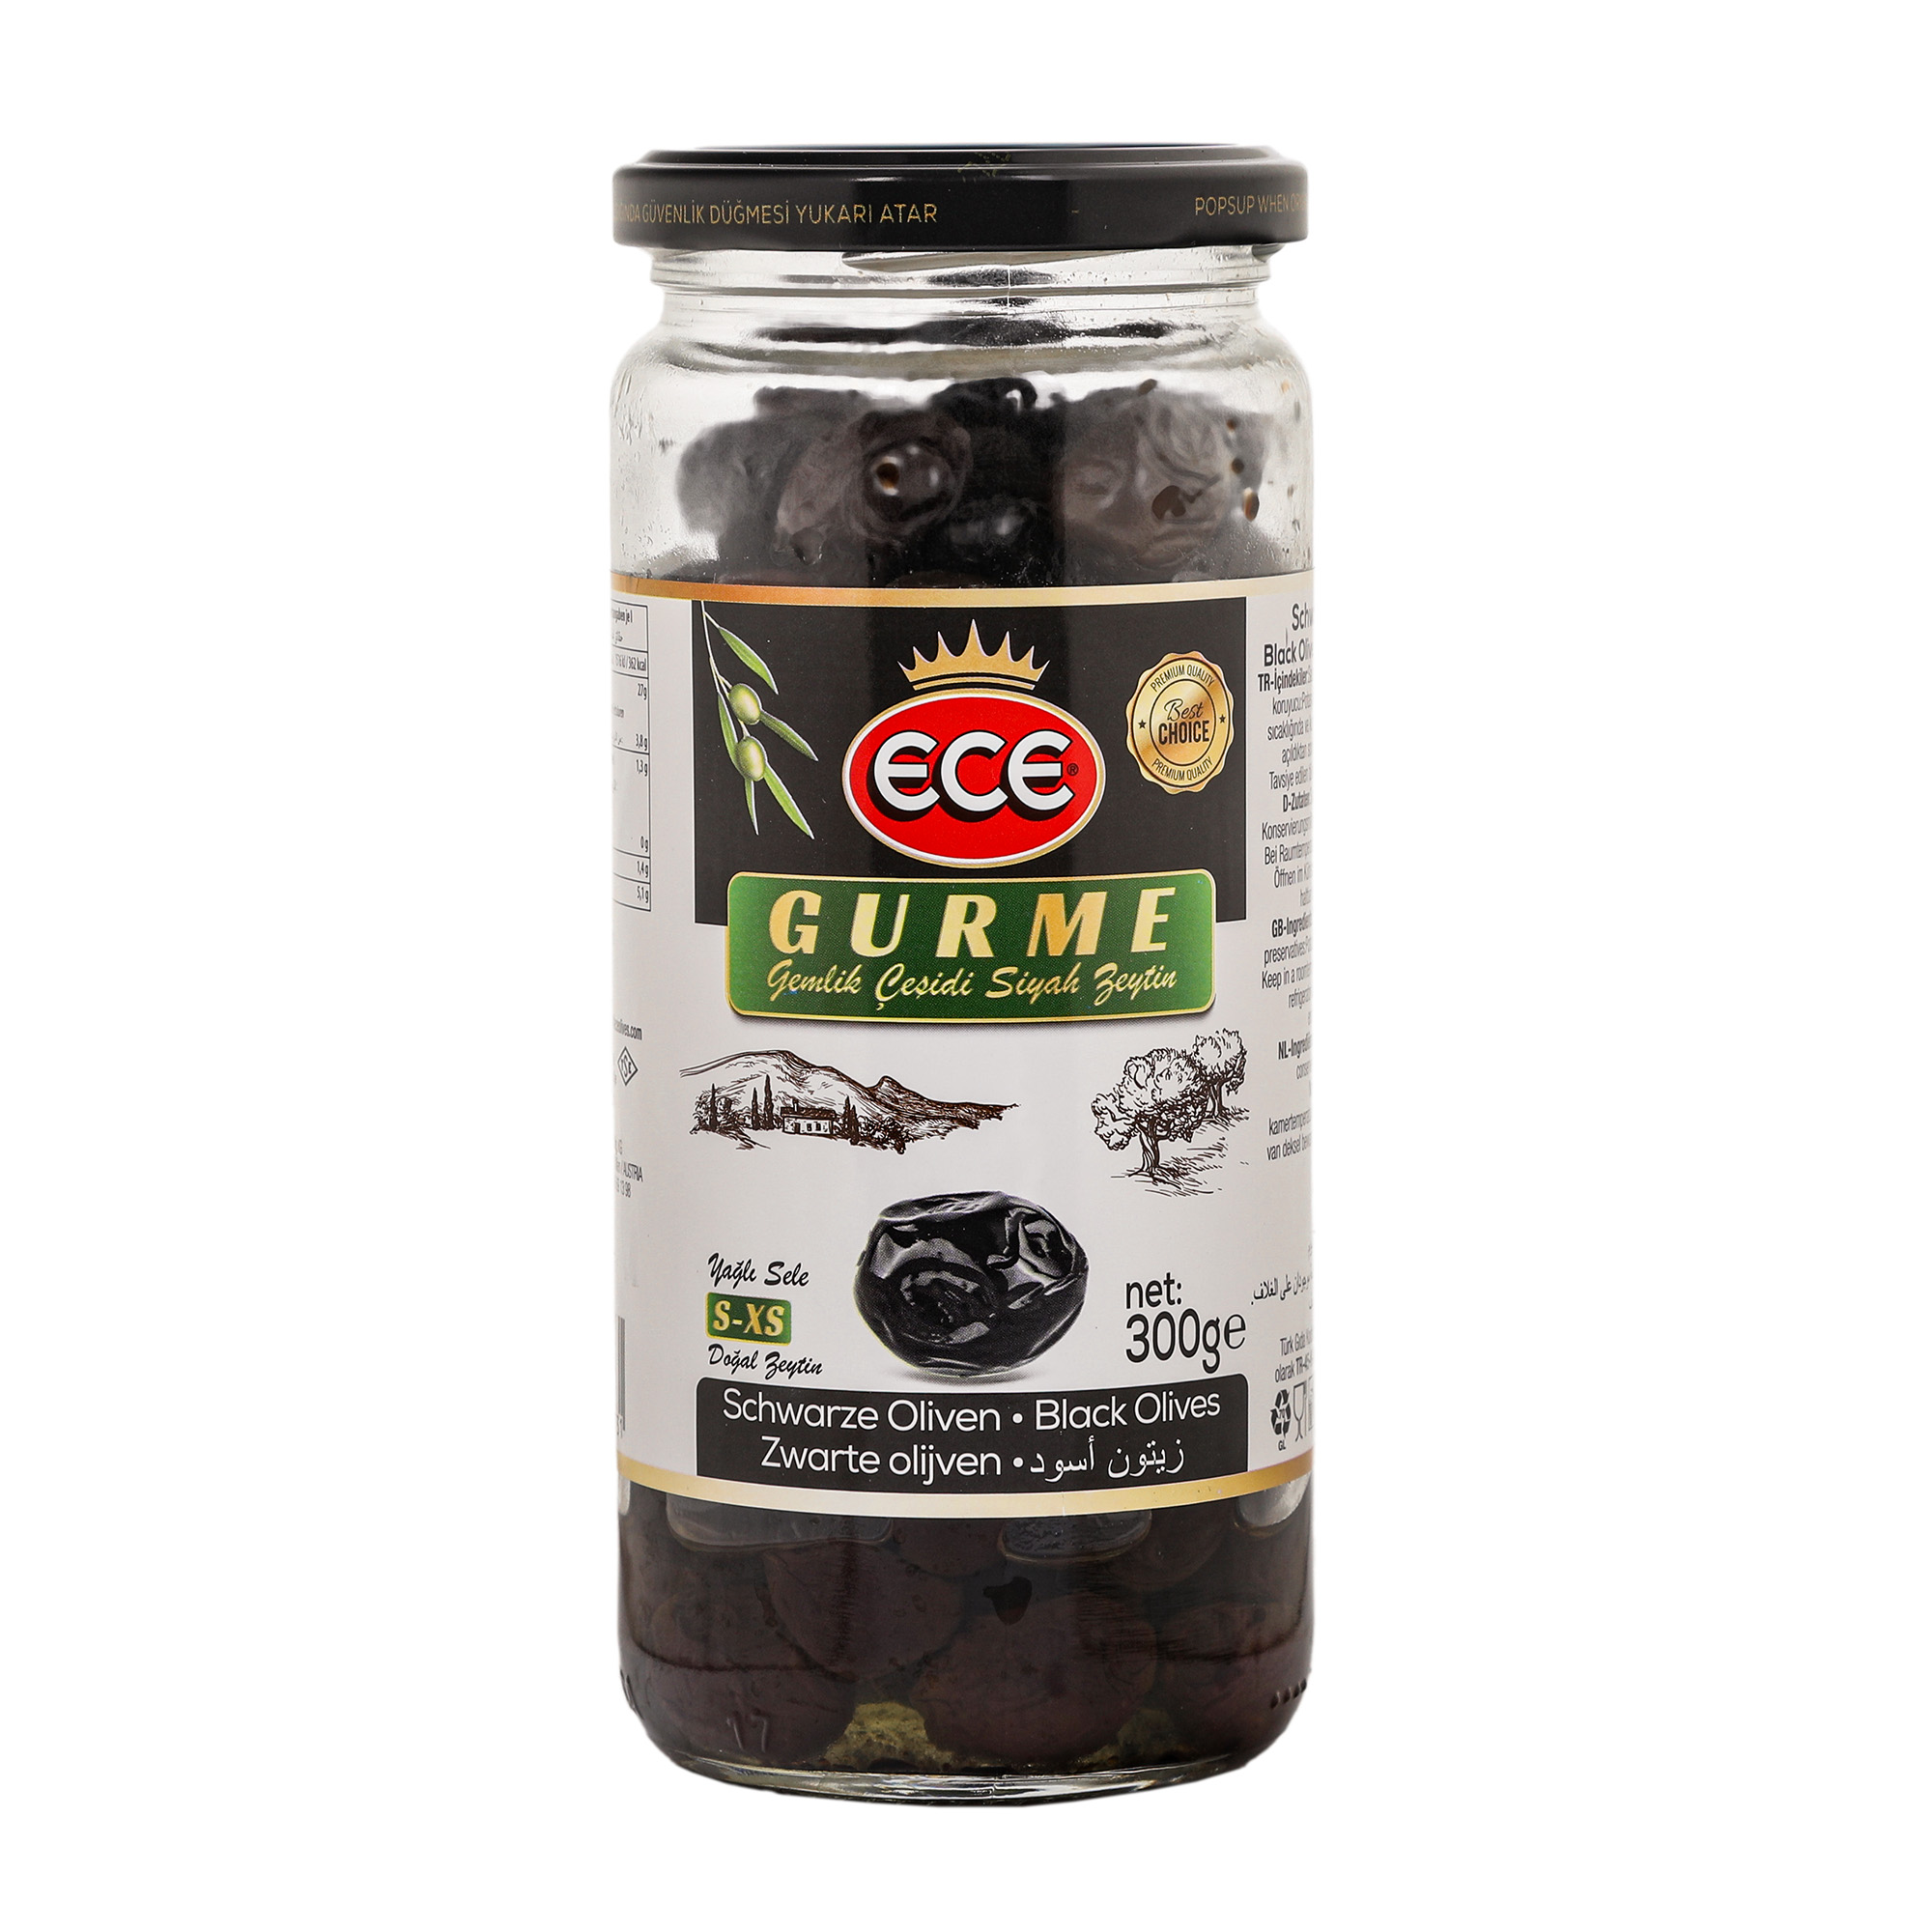 Оливки черные Ece Gurme в масле с косточкой, 300 г маслины delphi с косточкой кг